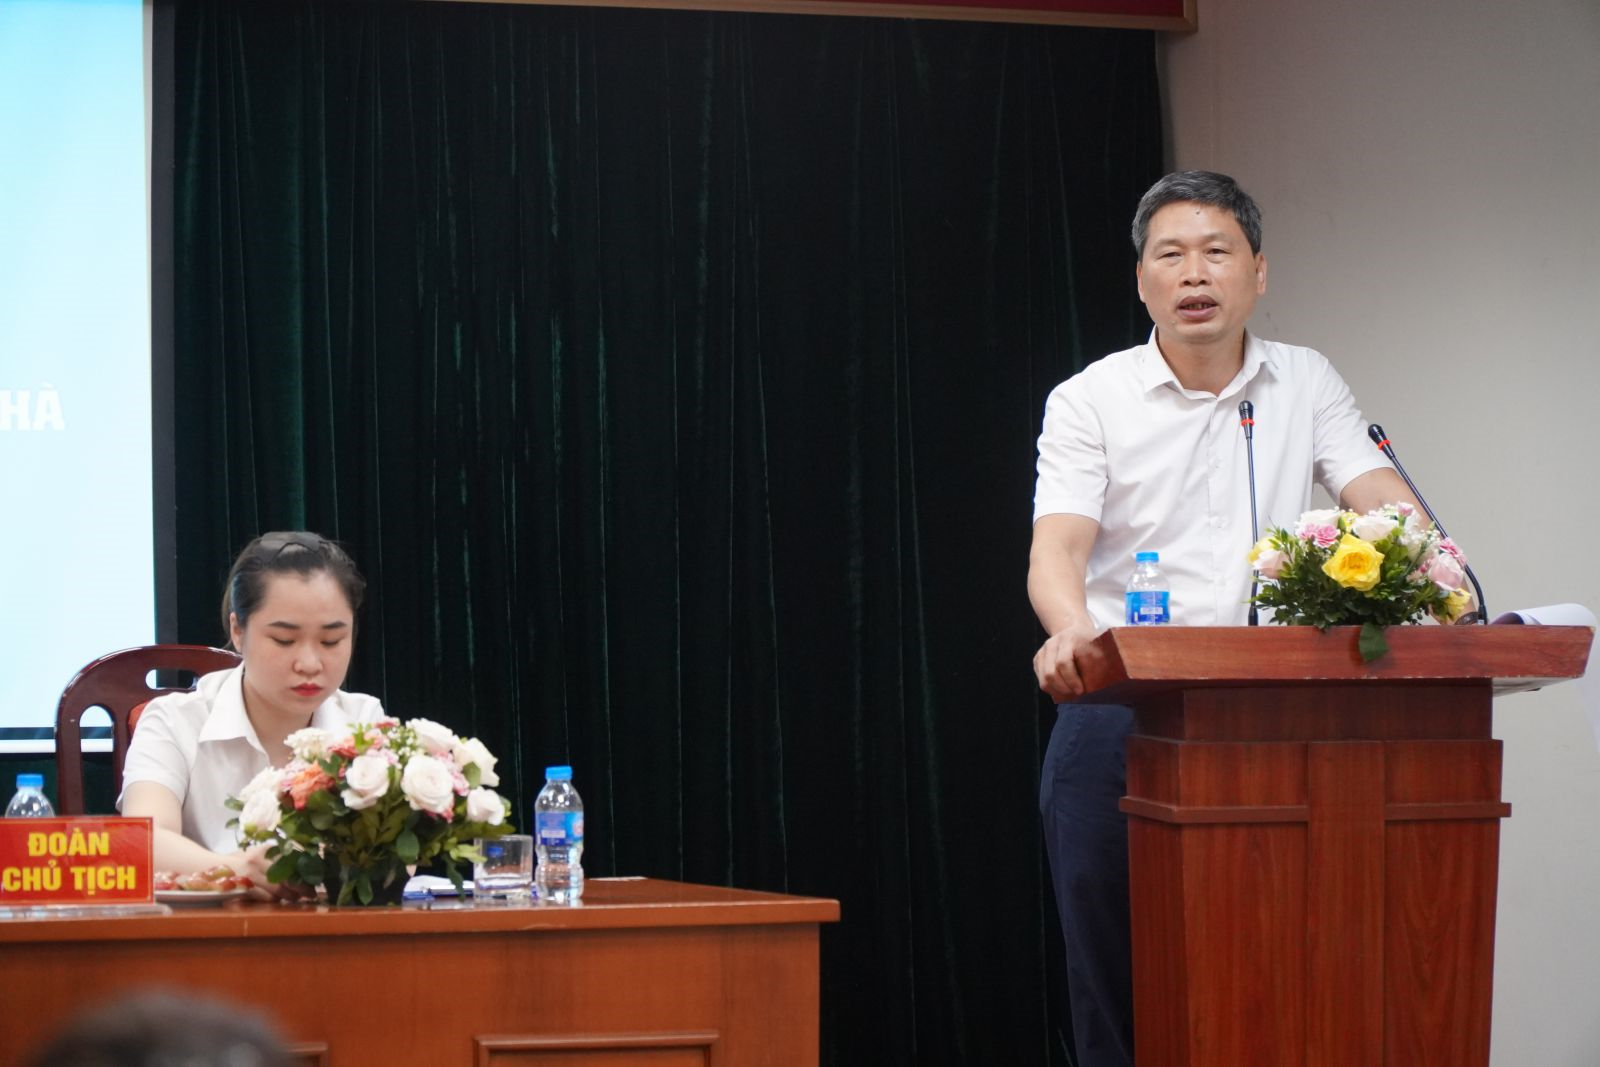 Đồng chí Phạm Văn Hiệp phát biểu chỉ đạo và chia sẻ mong muốn gửi đến công đoàn trường